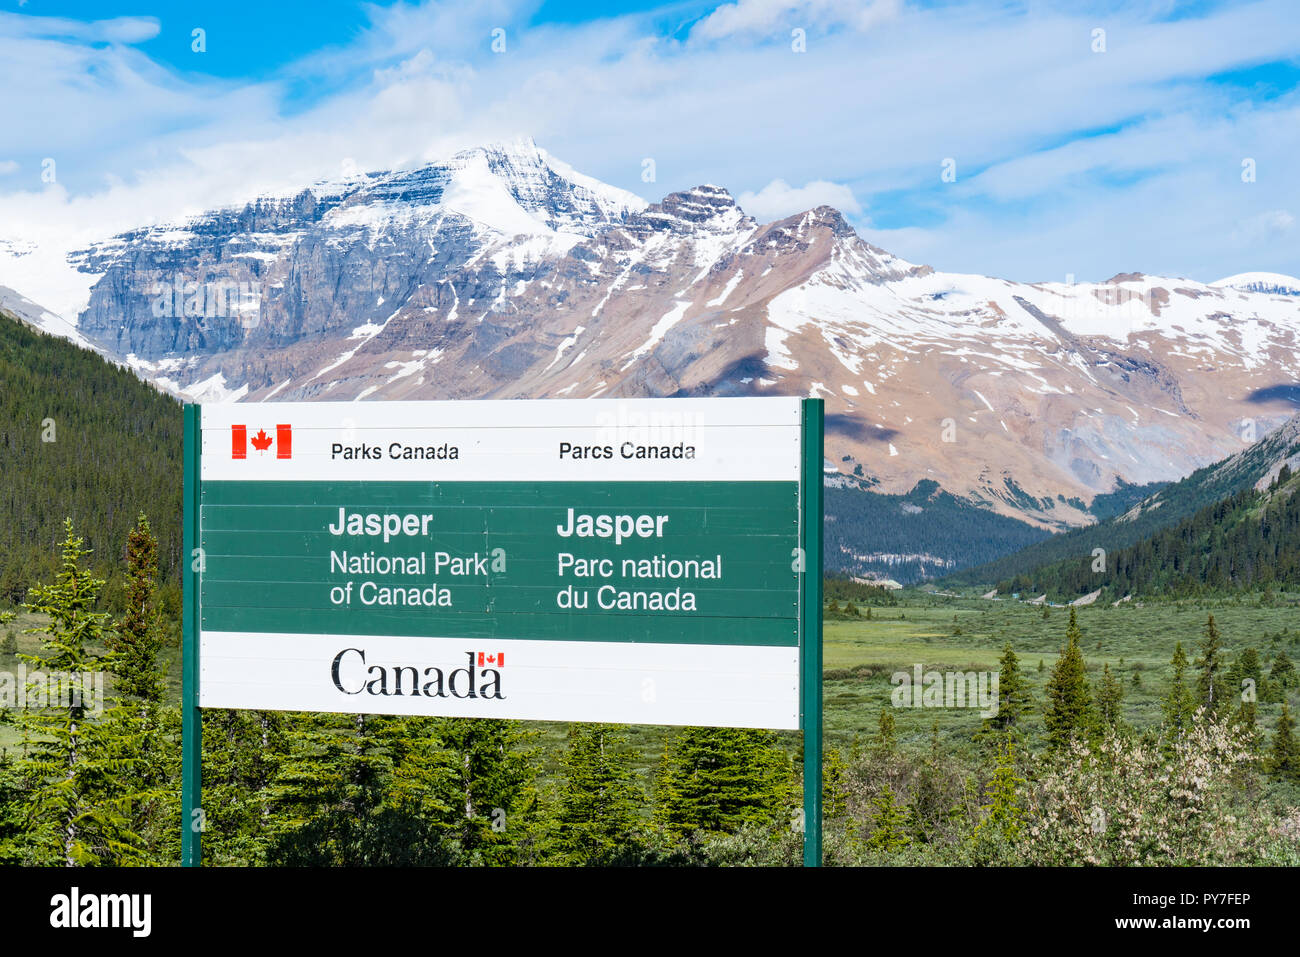 JASPER, CANADA - LE 4 JUILLET 2018 : panneau de bienvenue à l'entrée du Parc National de Jasper, Alberta, Canada Banque D'Images